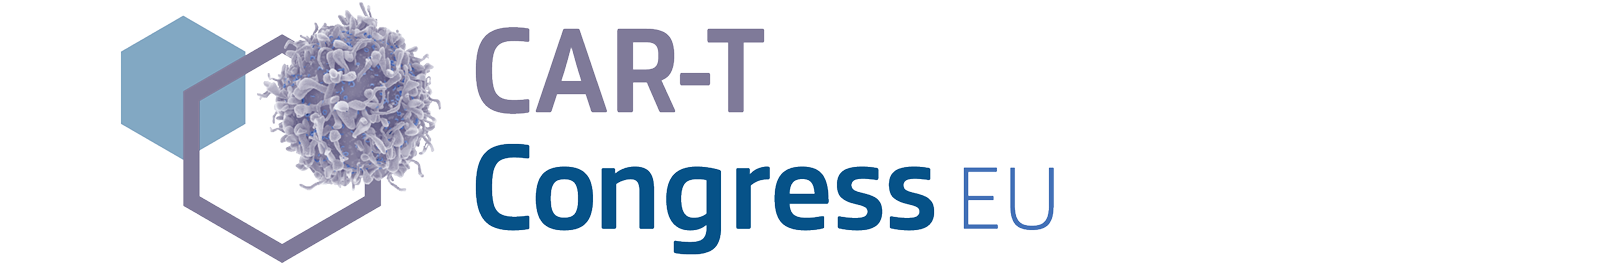 CAR-T Congress EU 2020